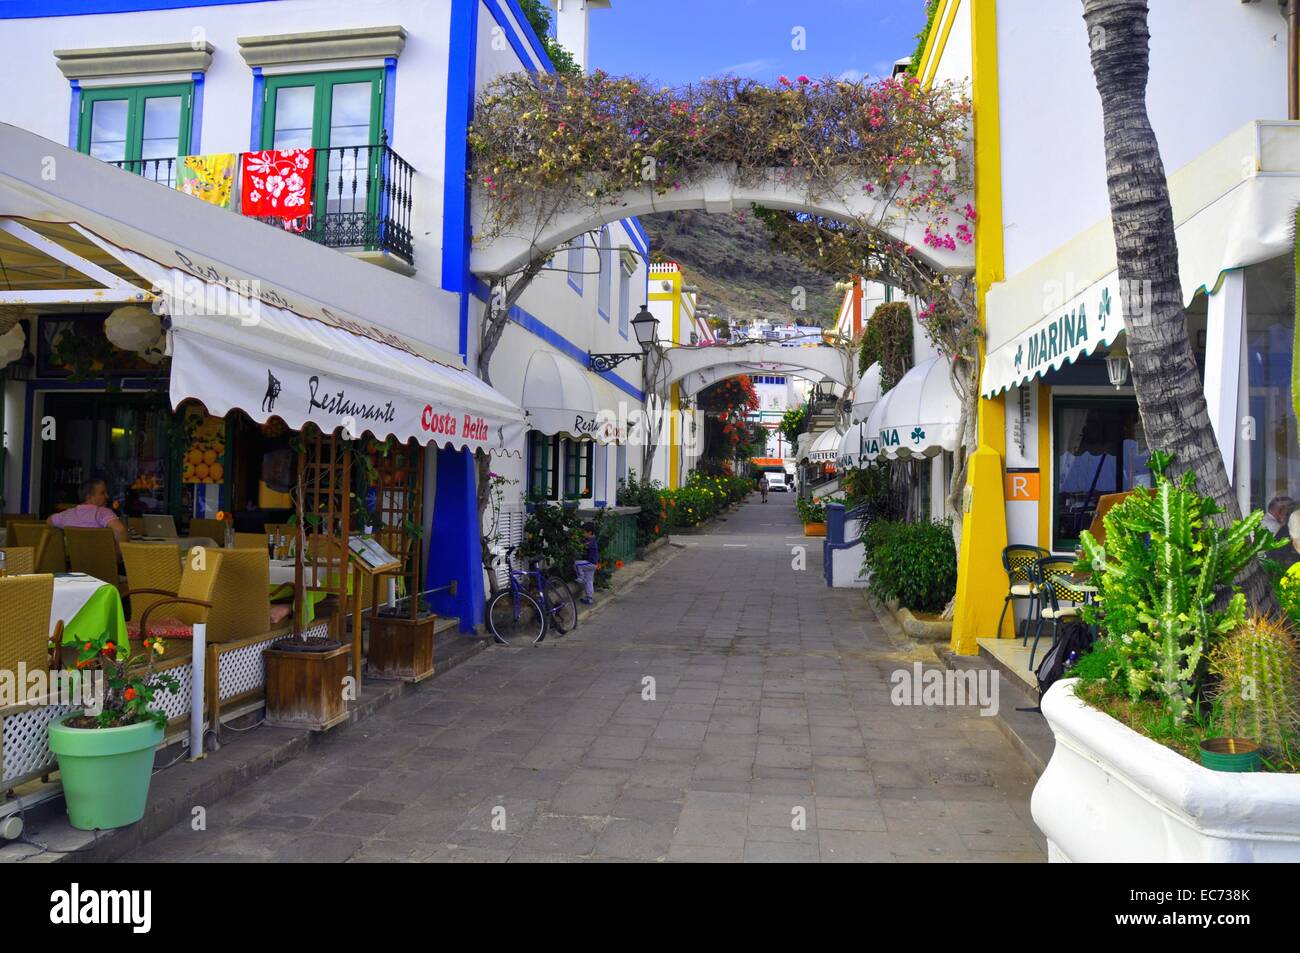 Colorful street in Puerto de Mogan, Gran Canaria, Spain. Stock Photo